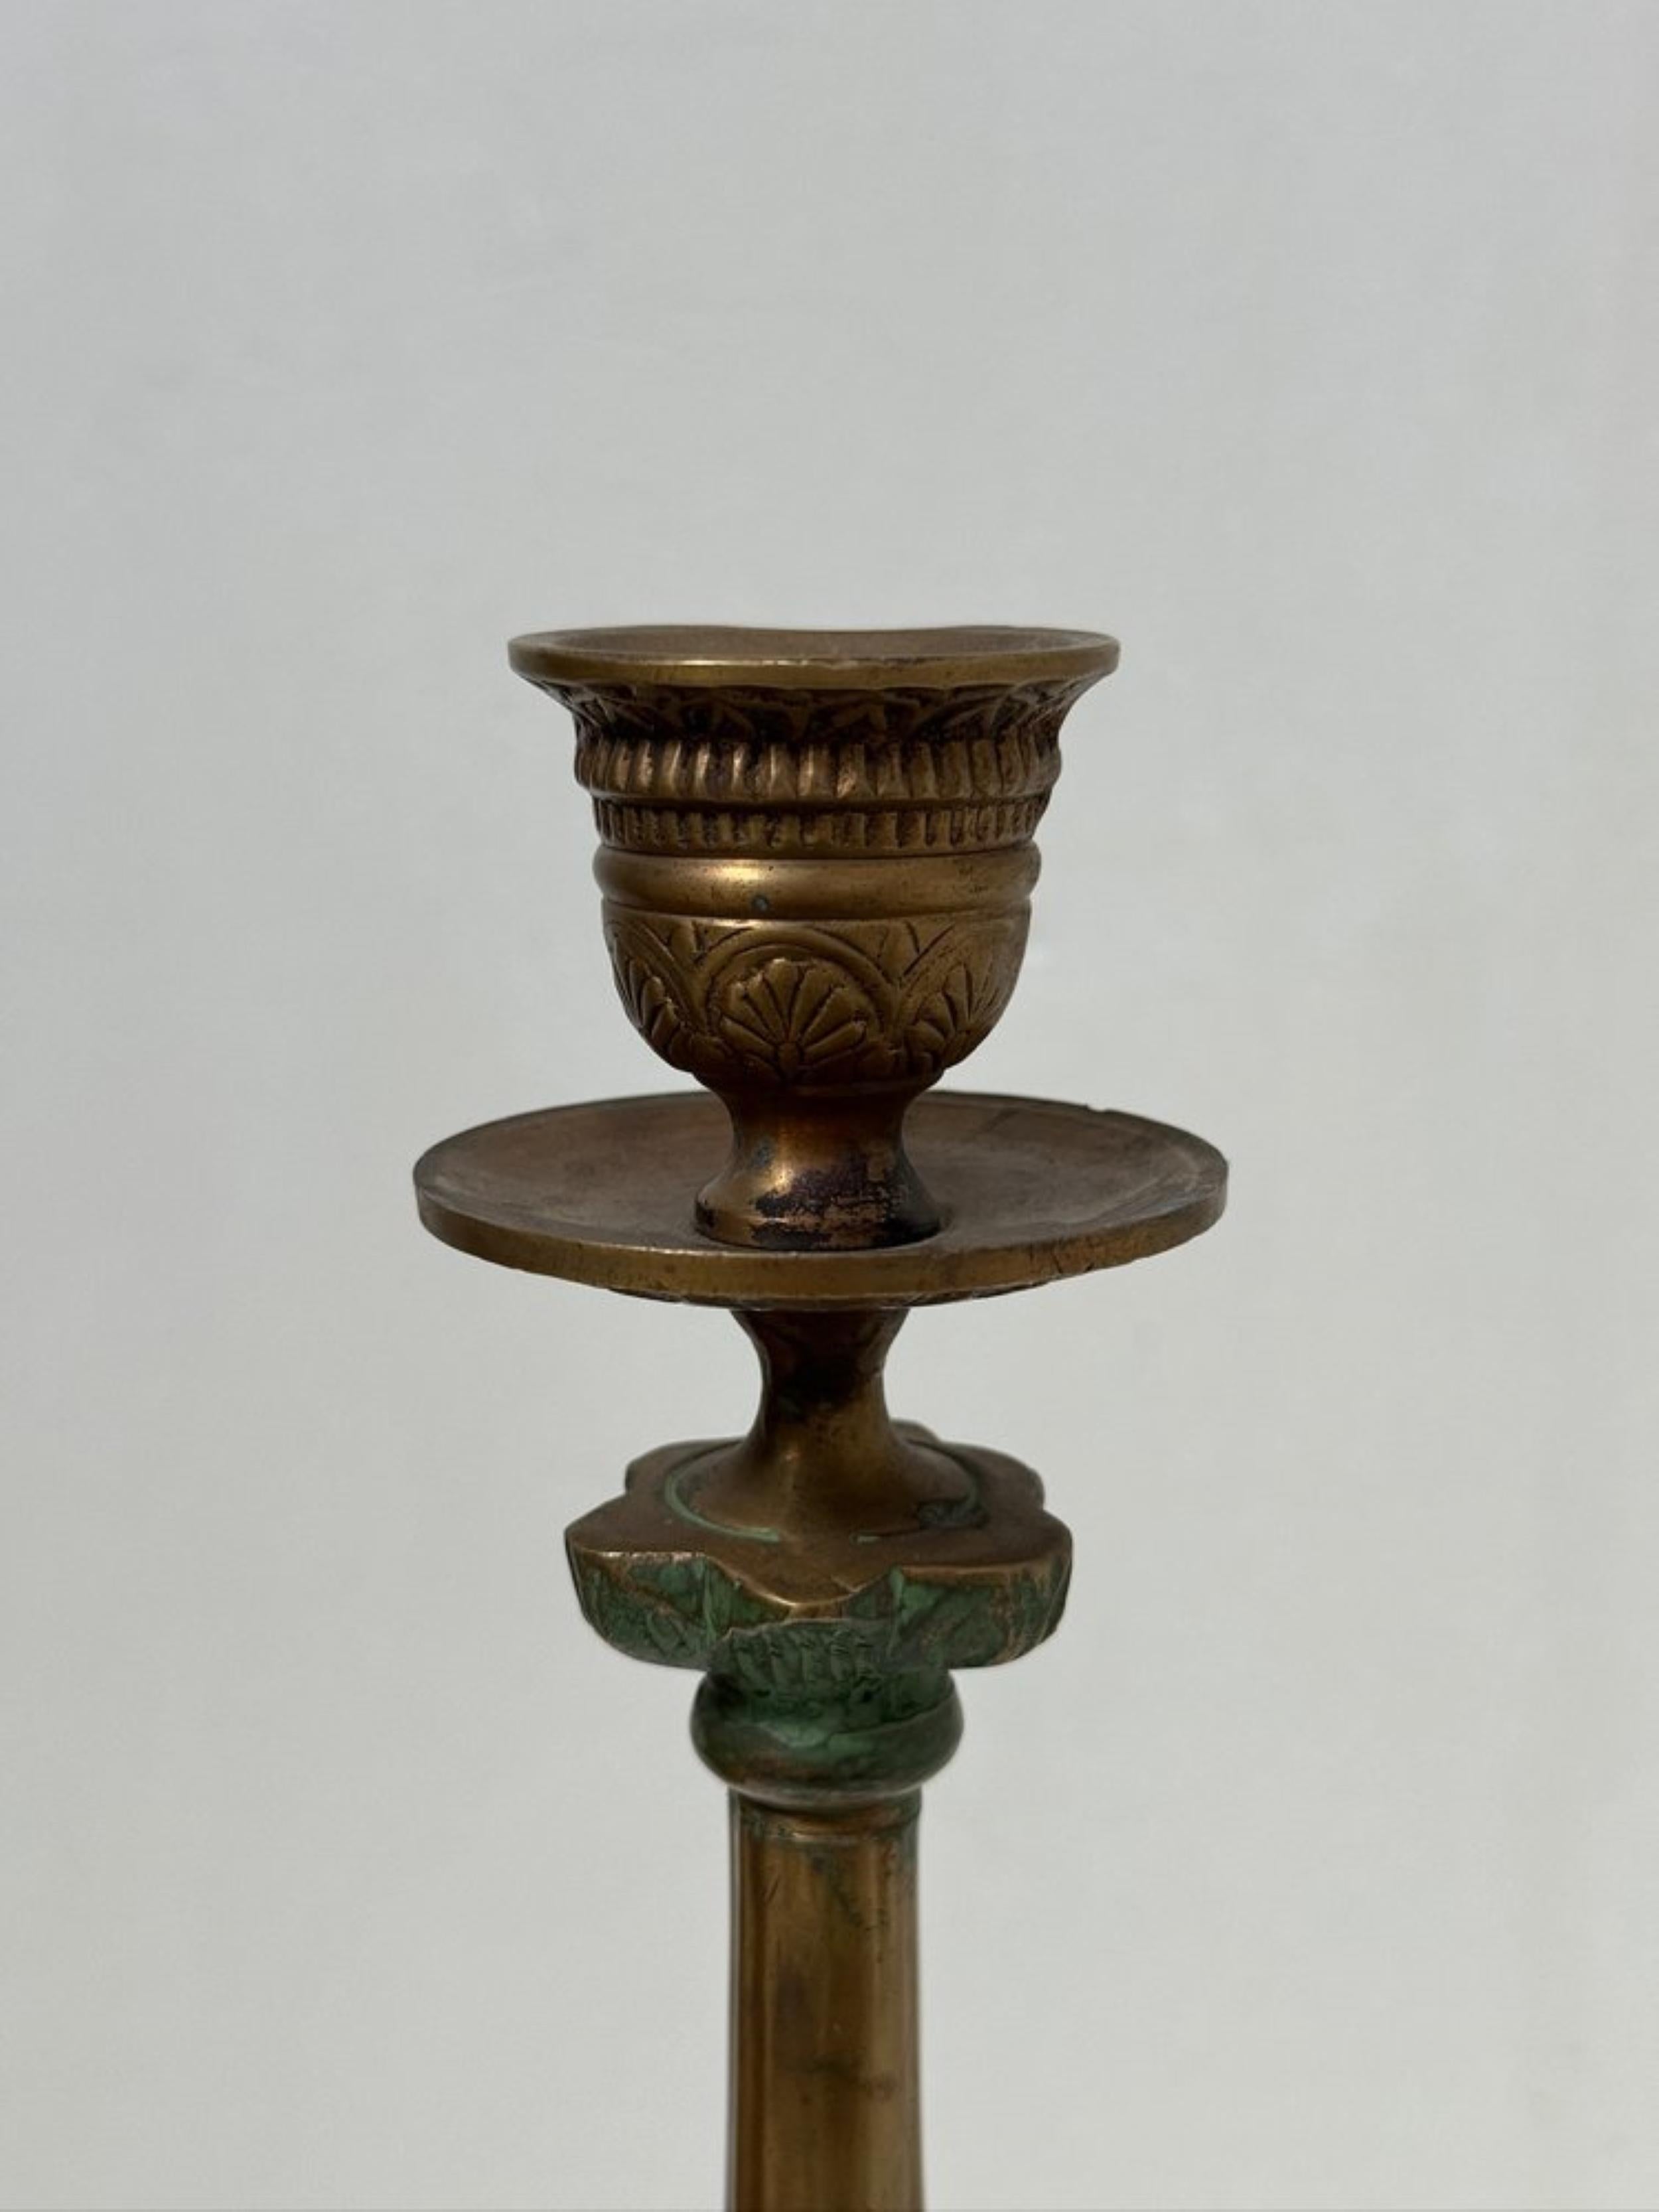 Ces chandeliers italiens en laiton/bronze du milieu du siècle dernier respirent l'élégance et la sophistication. Avec leurs détails complexes et leurs pieds griffes, ils témoignent d'un savoir-faire exquis, typique de l'époque. Avec leur design